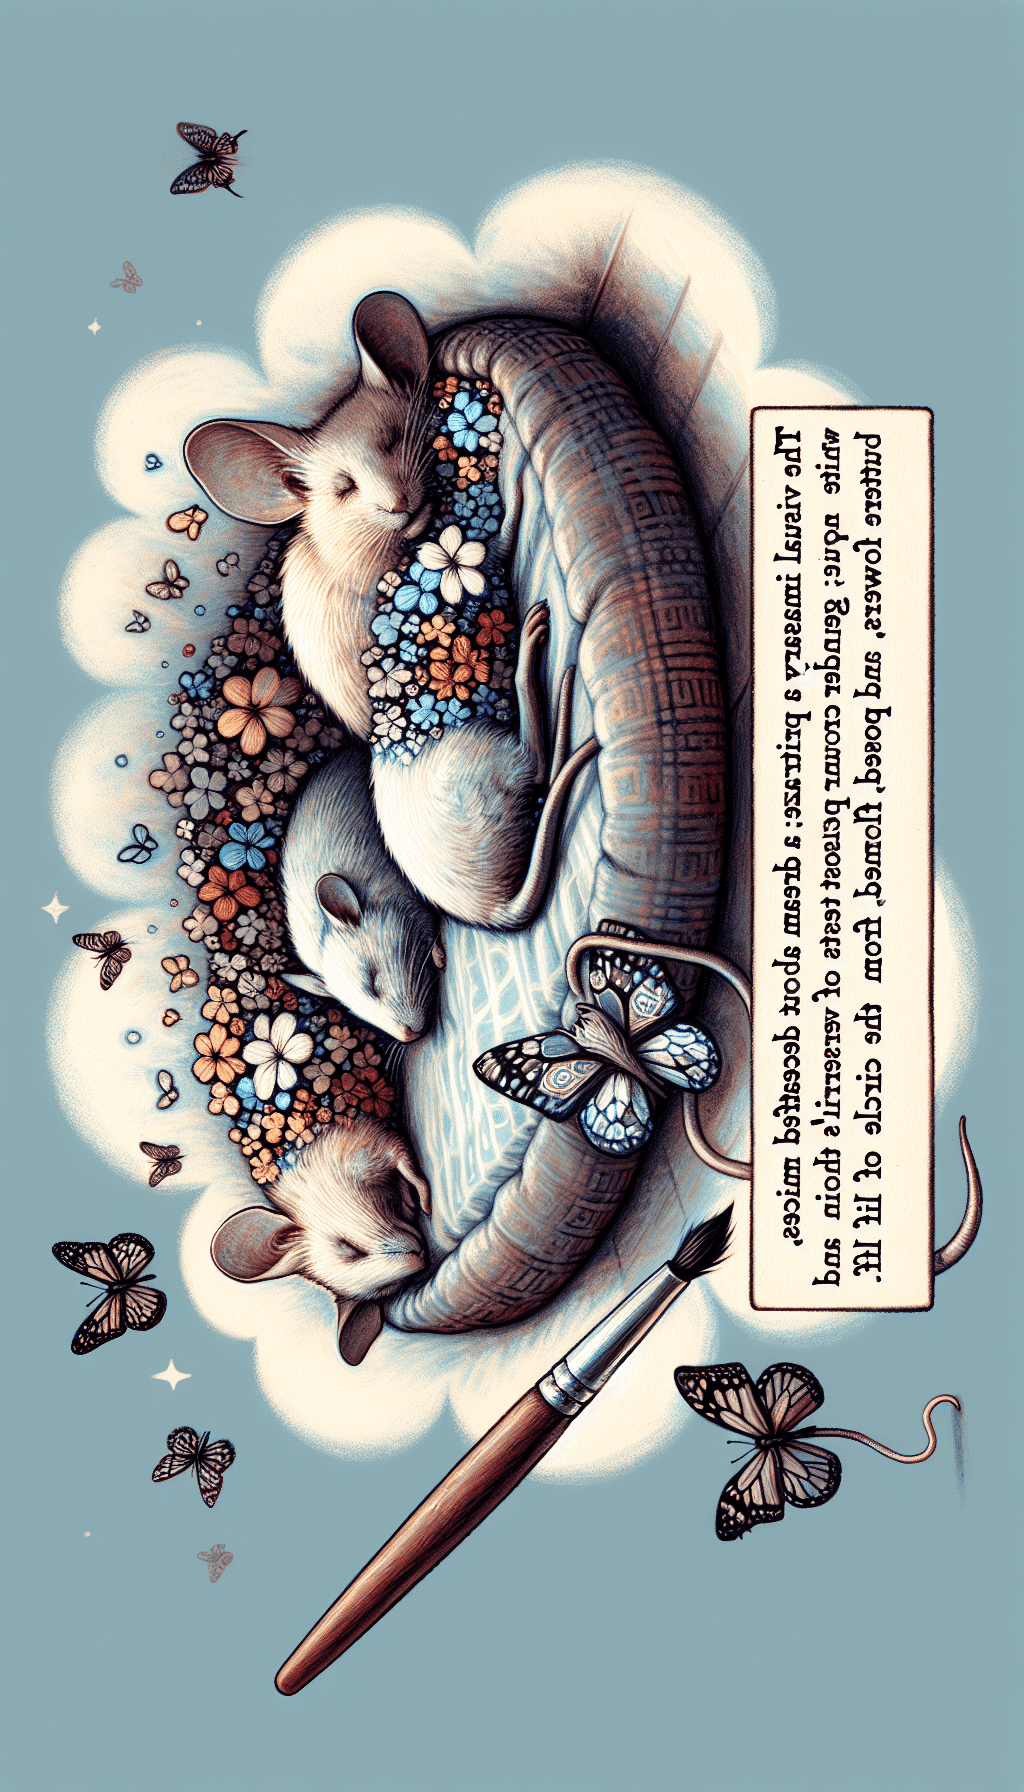 Interpreting Dreams of Dead Mice